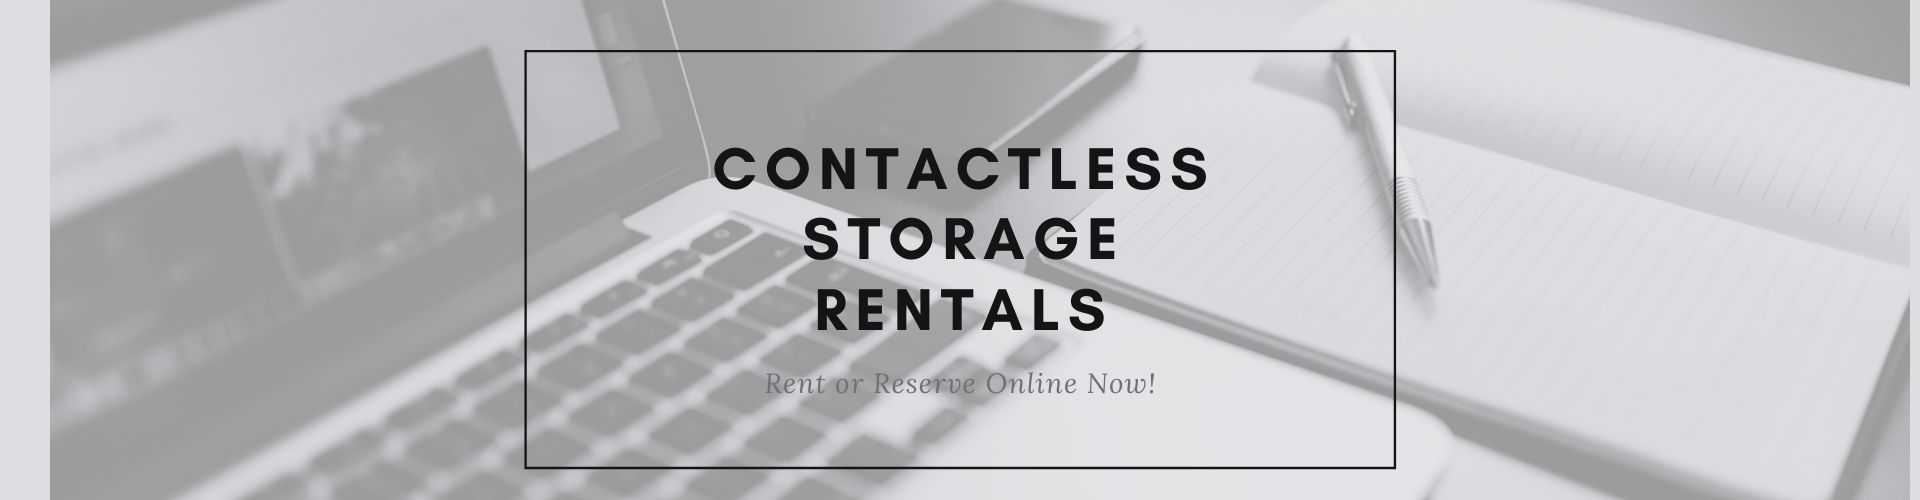 Contactless Storage Rentals in Baton Rouge LA